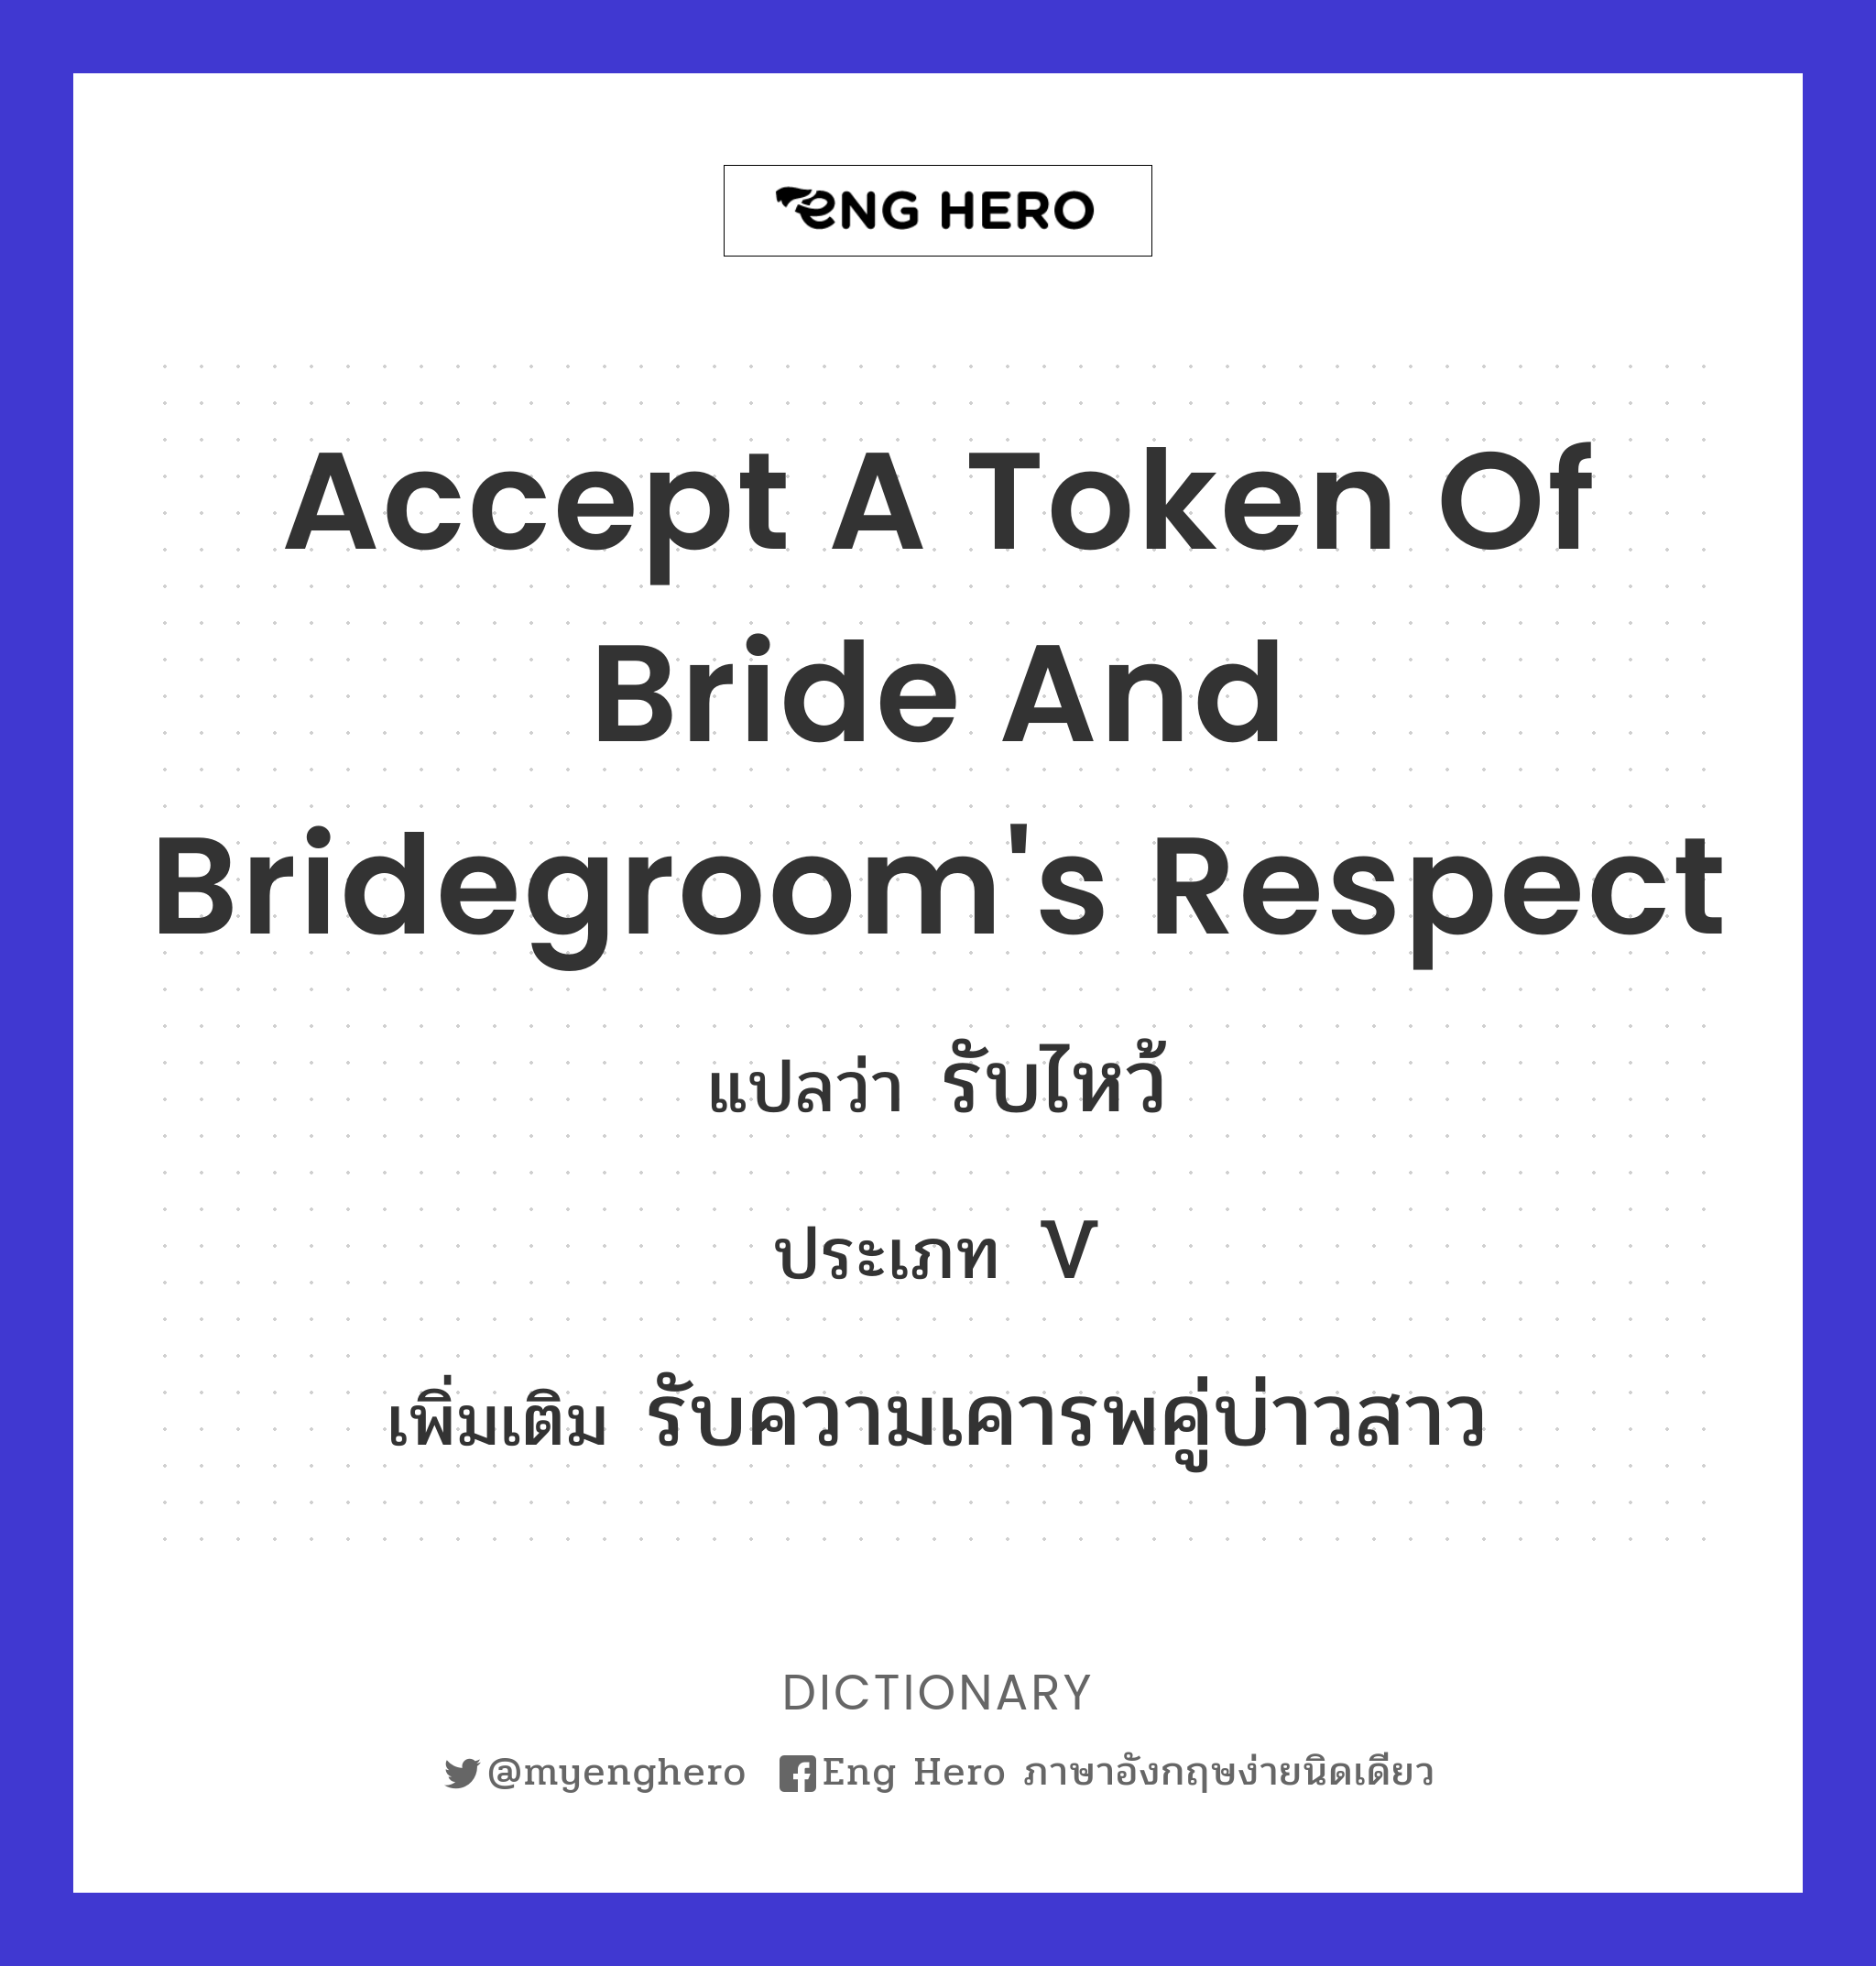 accept a token of bride and bridegroom's respect